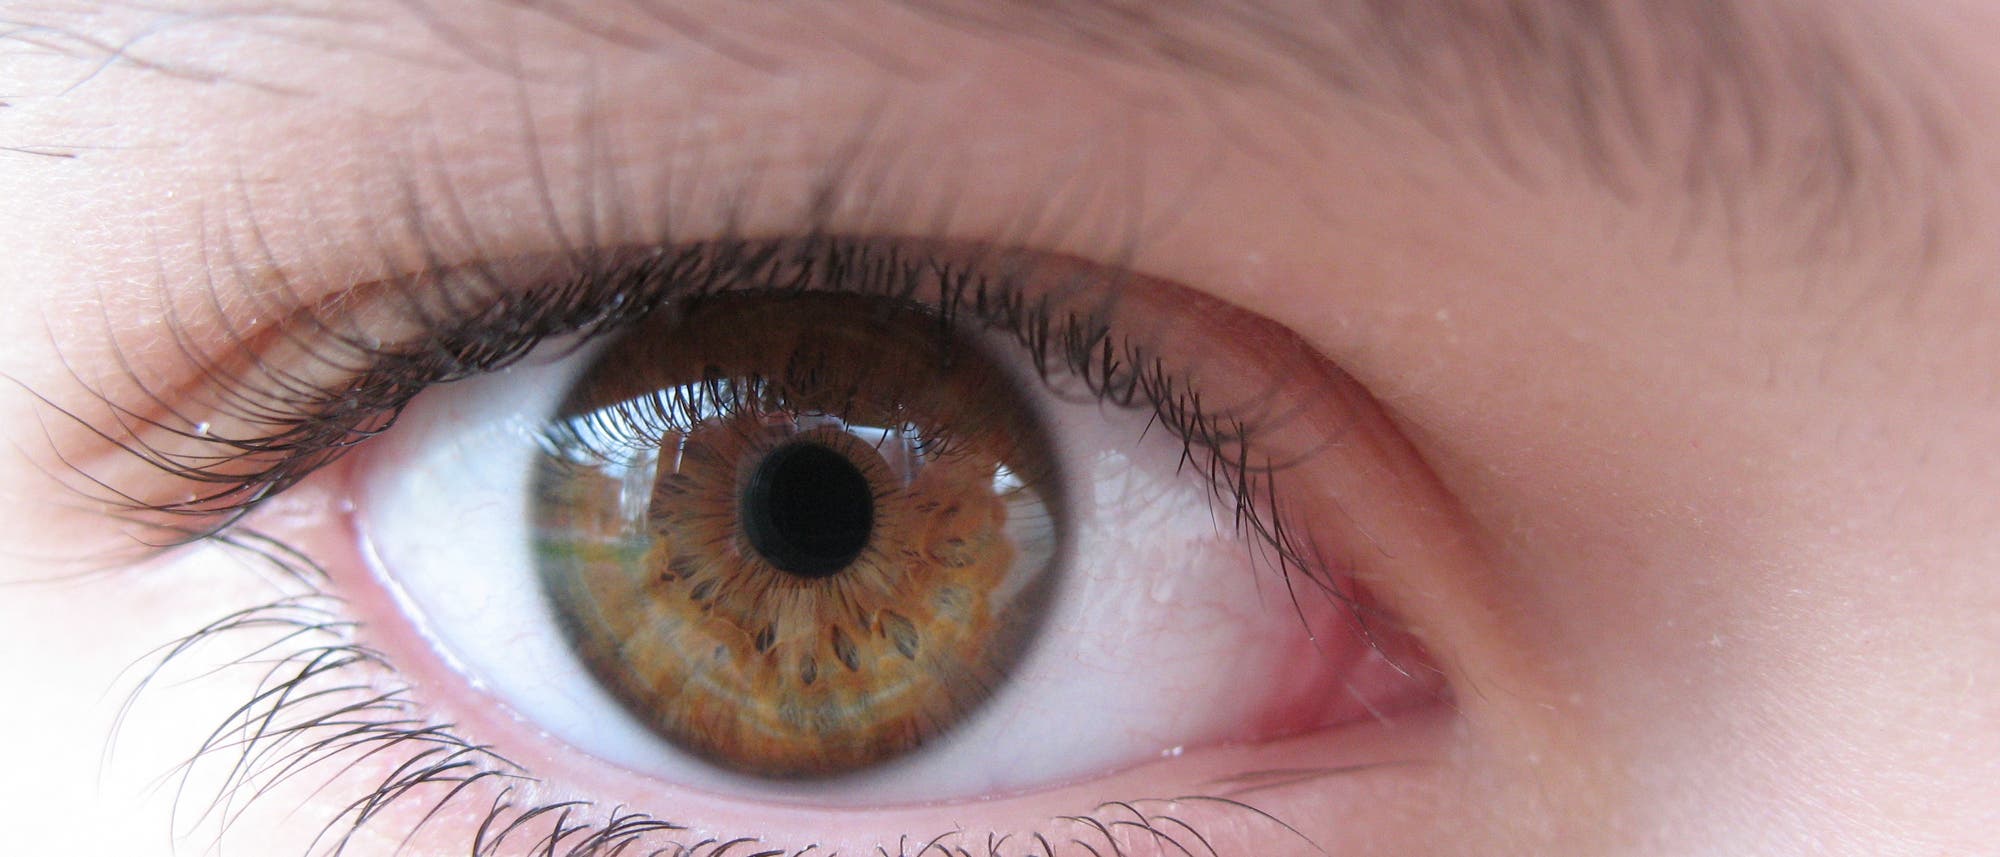 Das braun-grüne Auge einer Frau in Nahaufnahme